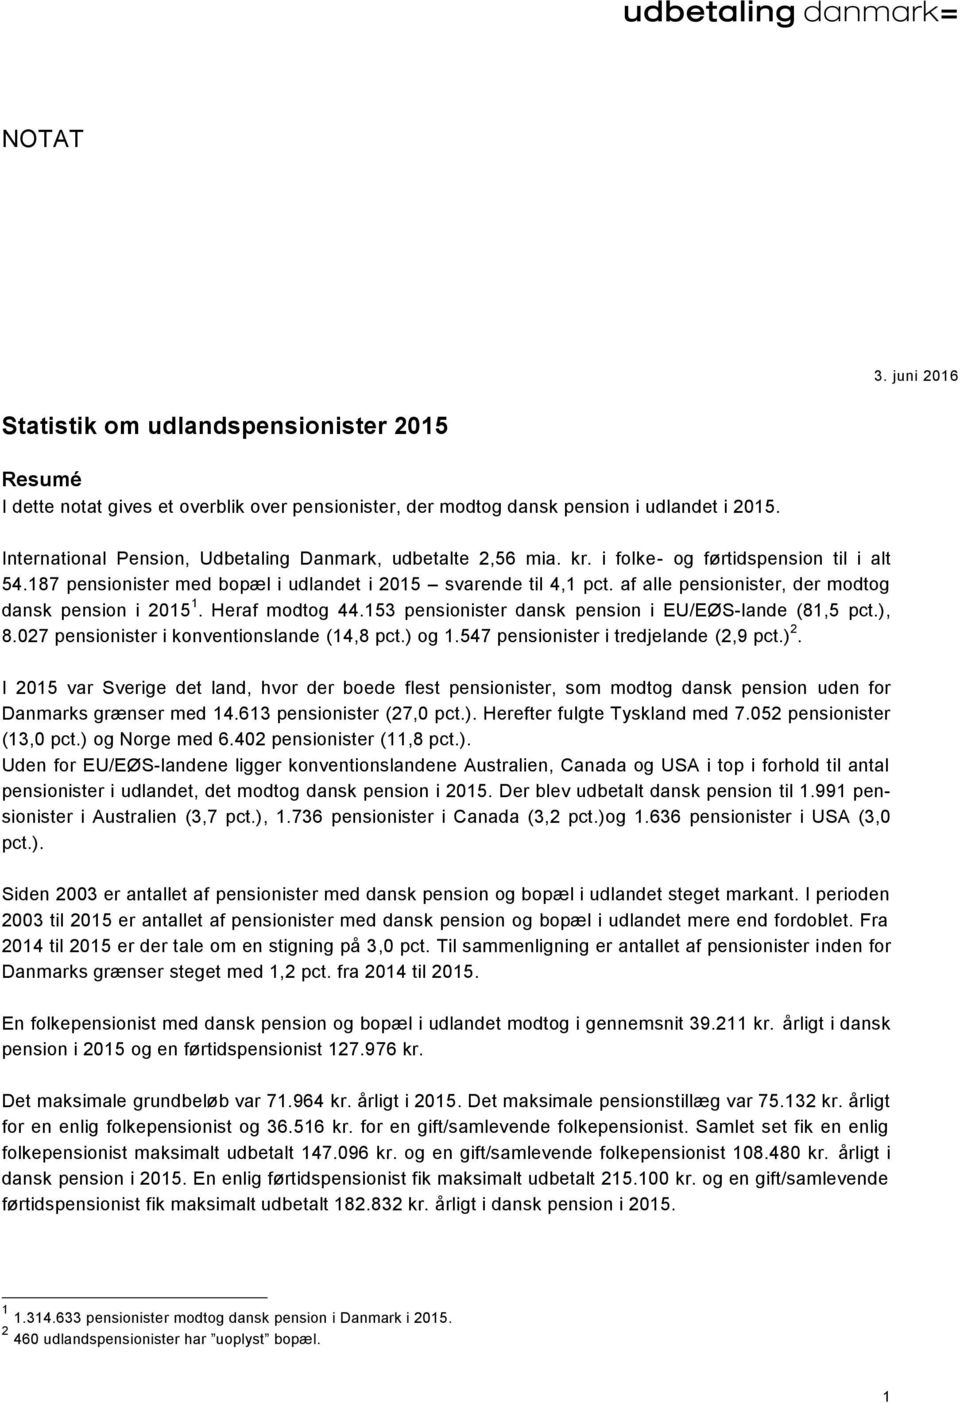 af alle pensionister, der modtog dansk pension i 2015 1. Heraf modtog 44.153 pensionister dansk pension i EU/EØS-lande (81,5 pct.), 8.027 pensionister i konventionslande (14,8 pct.) og 1.